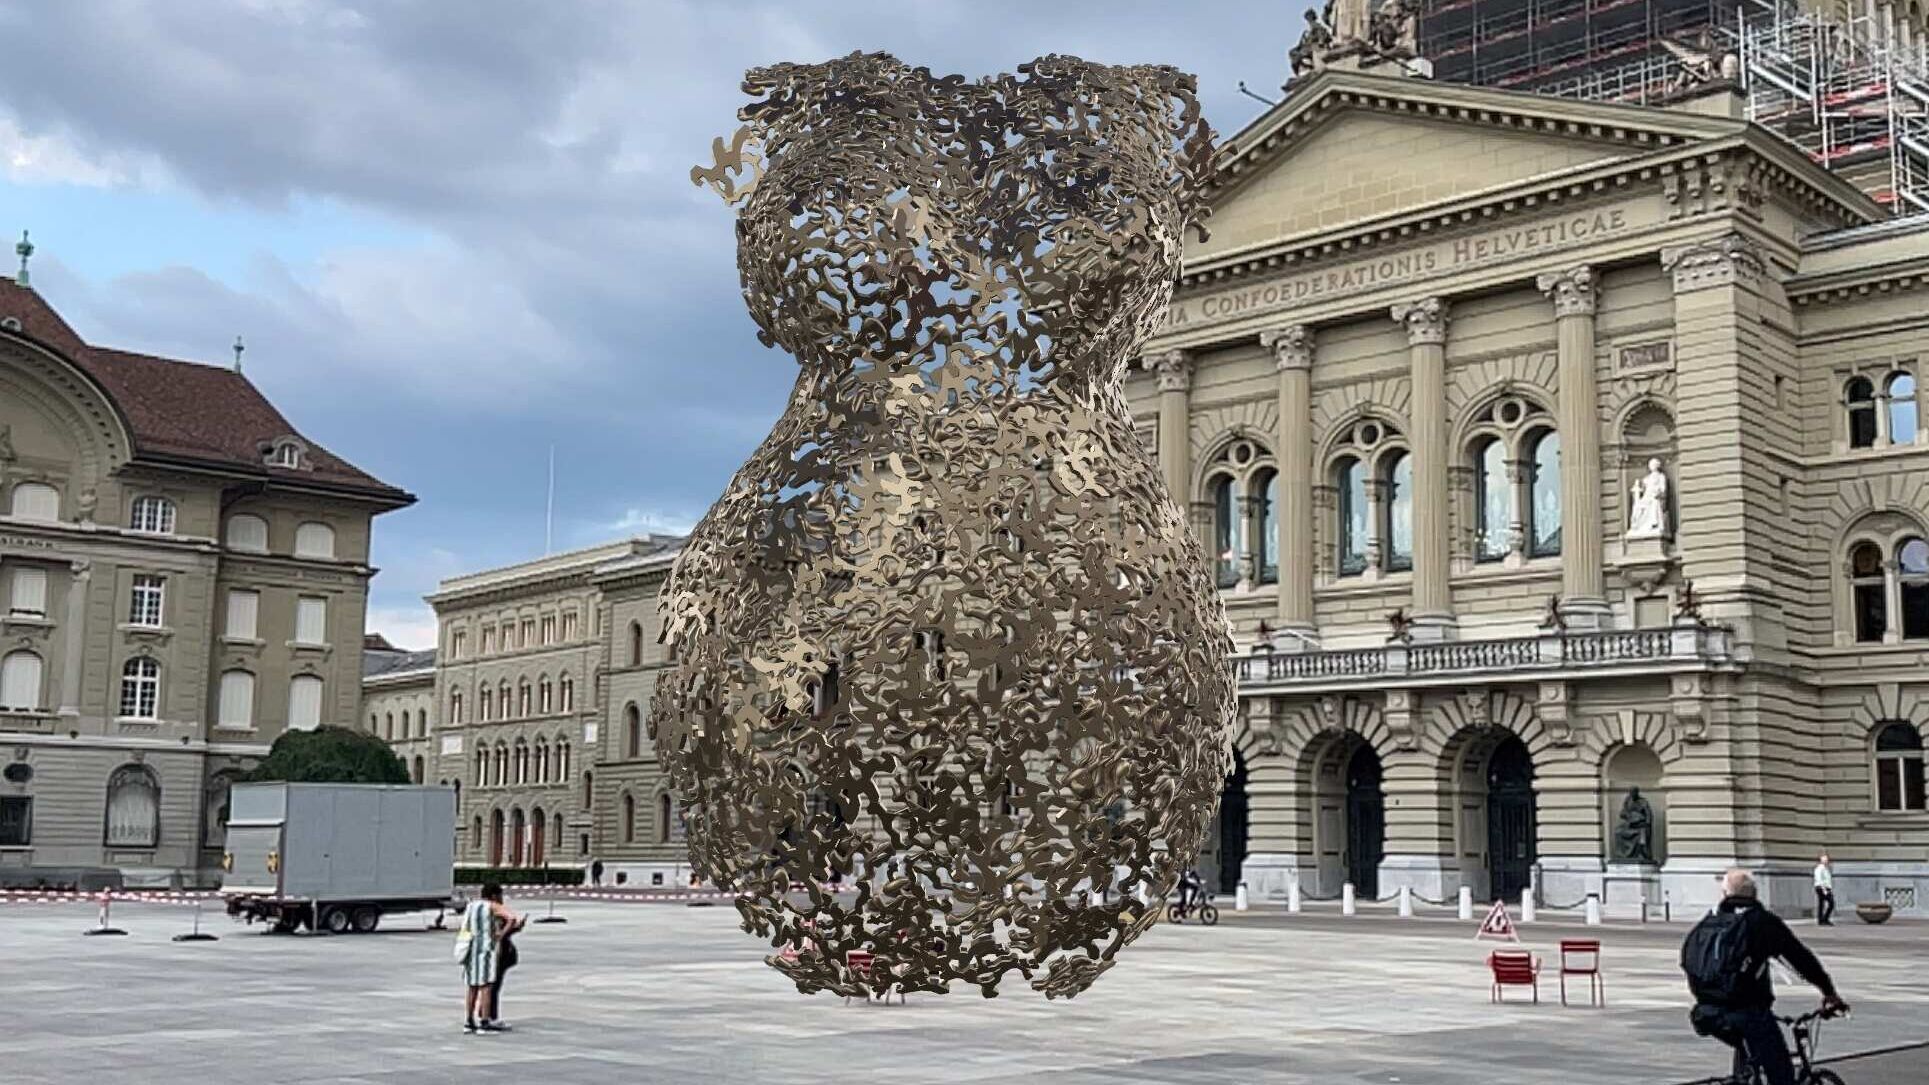 Thực tế tăng cường: tác phẩm điêu khắc của nghệ sĩ Andrea Stahl trong AR trước Cung điện Liên bang ở Bern